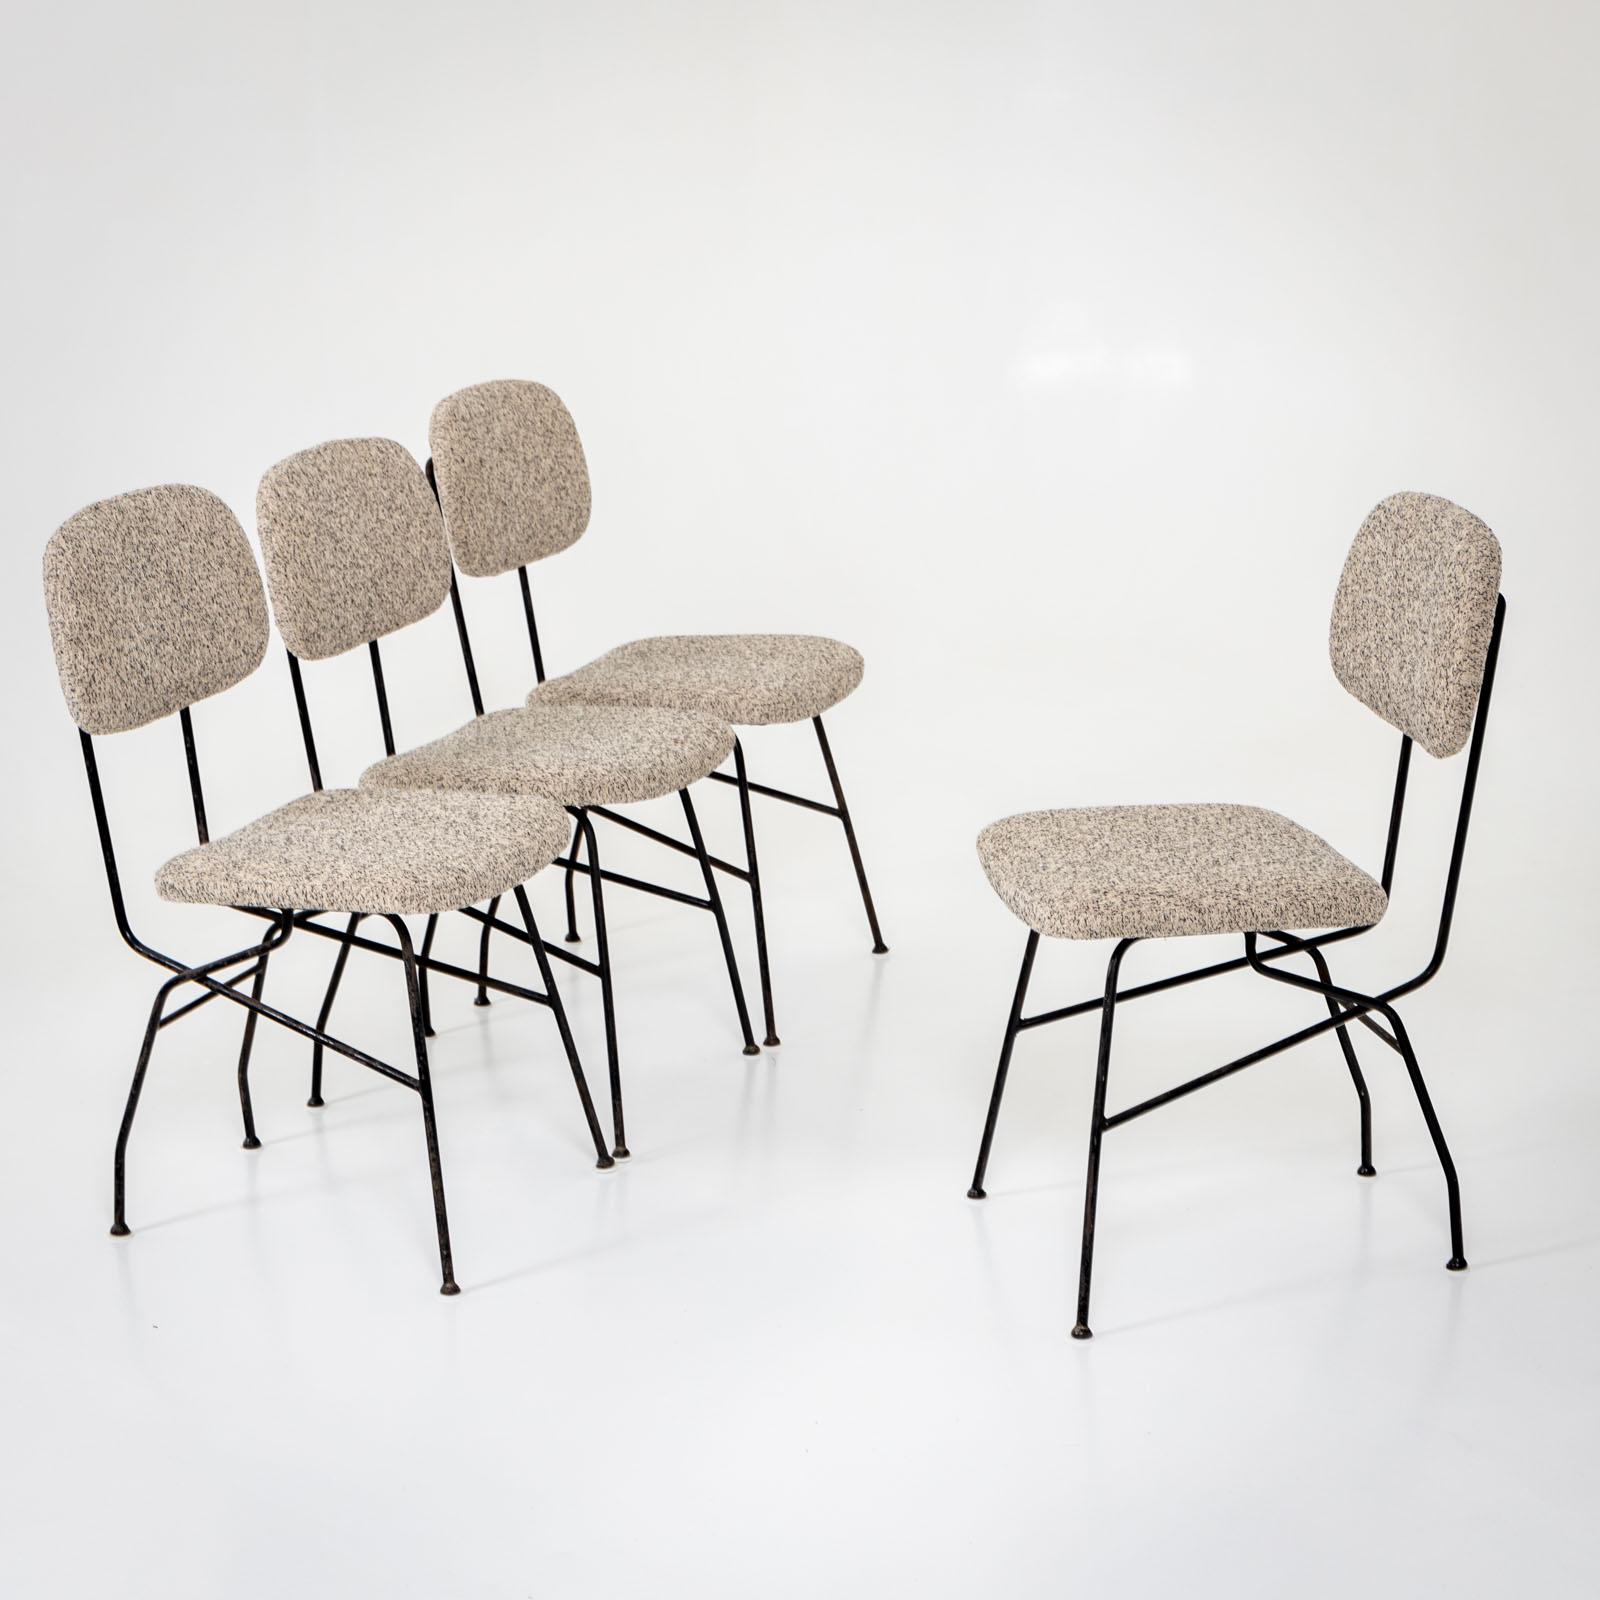 Ensemble de quatre chaises Cocorita sur des châssis en fer noir. Les chaises sont dotées d'un dossier et d'une assise rembourrés et ont été nouvellement revêtues d'un tissu chiné noir et blanc. 